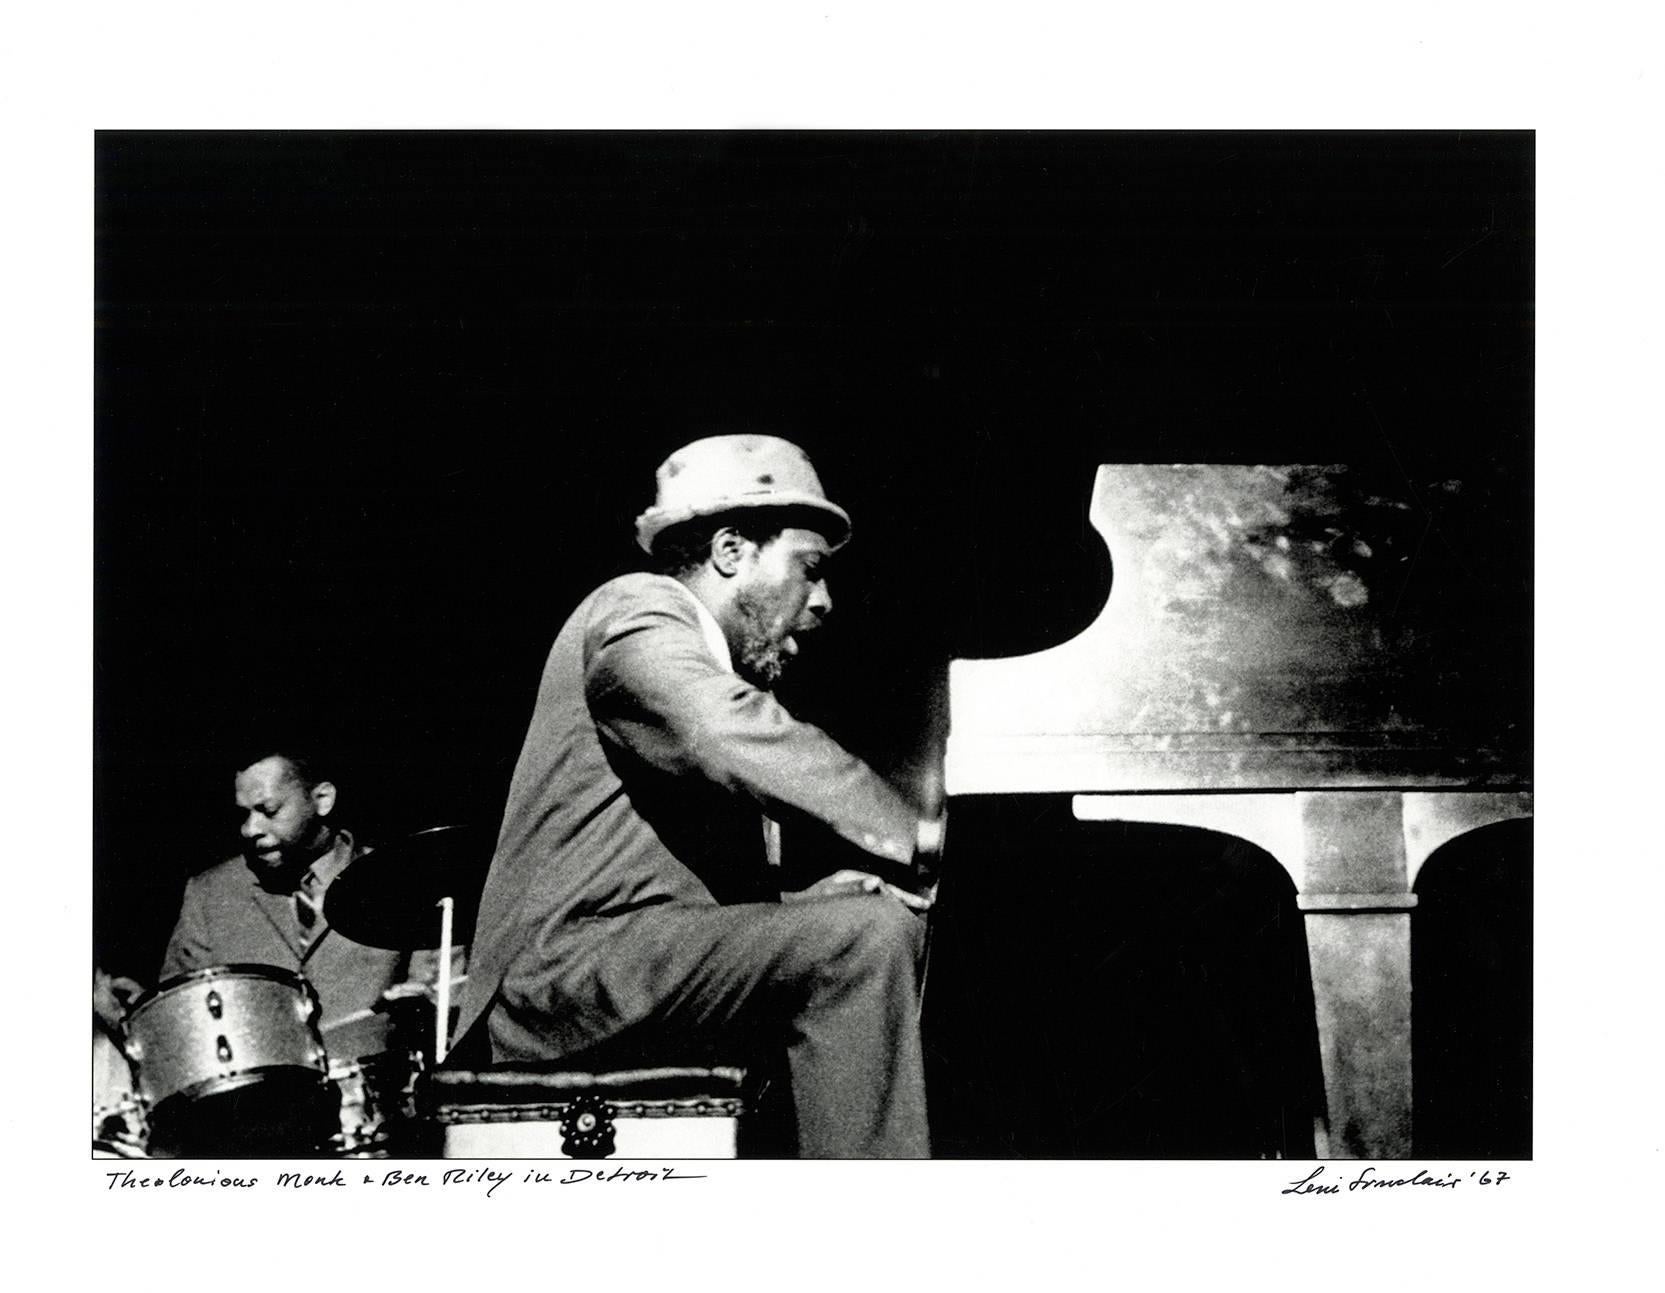 Black and White Photograph Leni Sinclair - Photographie Thelonious Monk de Détroit, 1967 (photographie japonaise) 